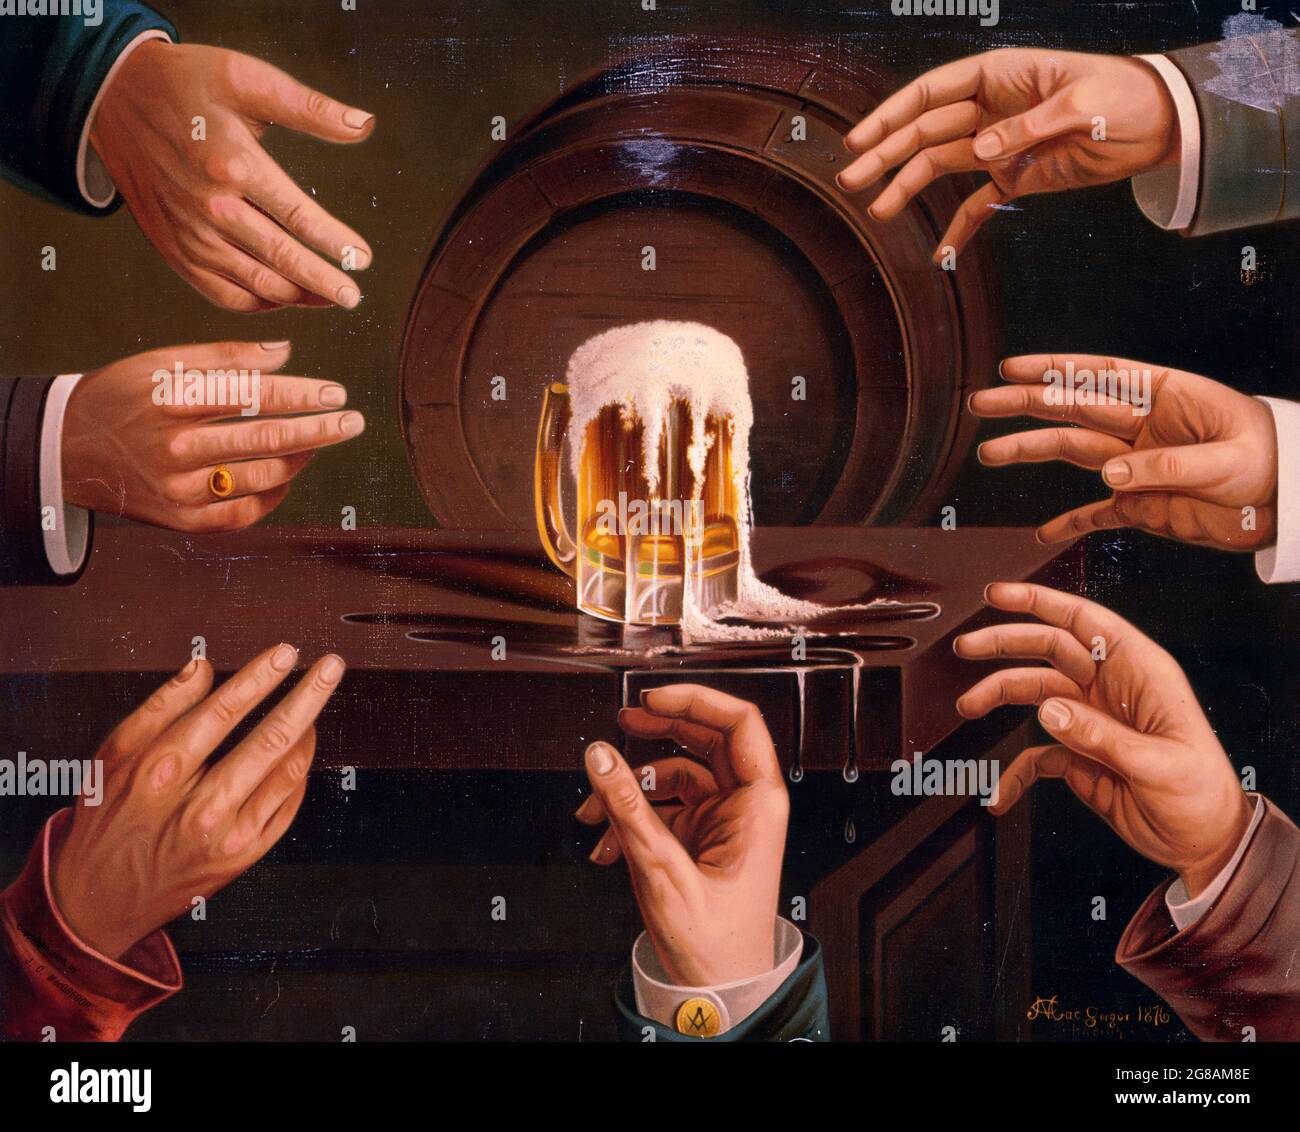 Publicité vintage pour la bière. 1876. Sept mains mâles atteignant pour une tasse de bière, assis sur une table. (Probablement pour la brasserie Anheuser-Busch.) Banque D'Images